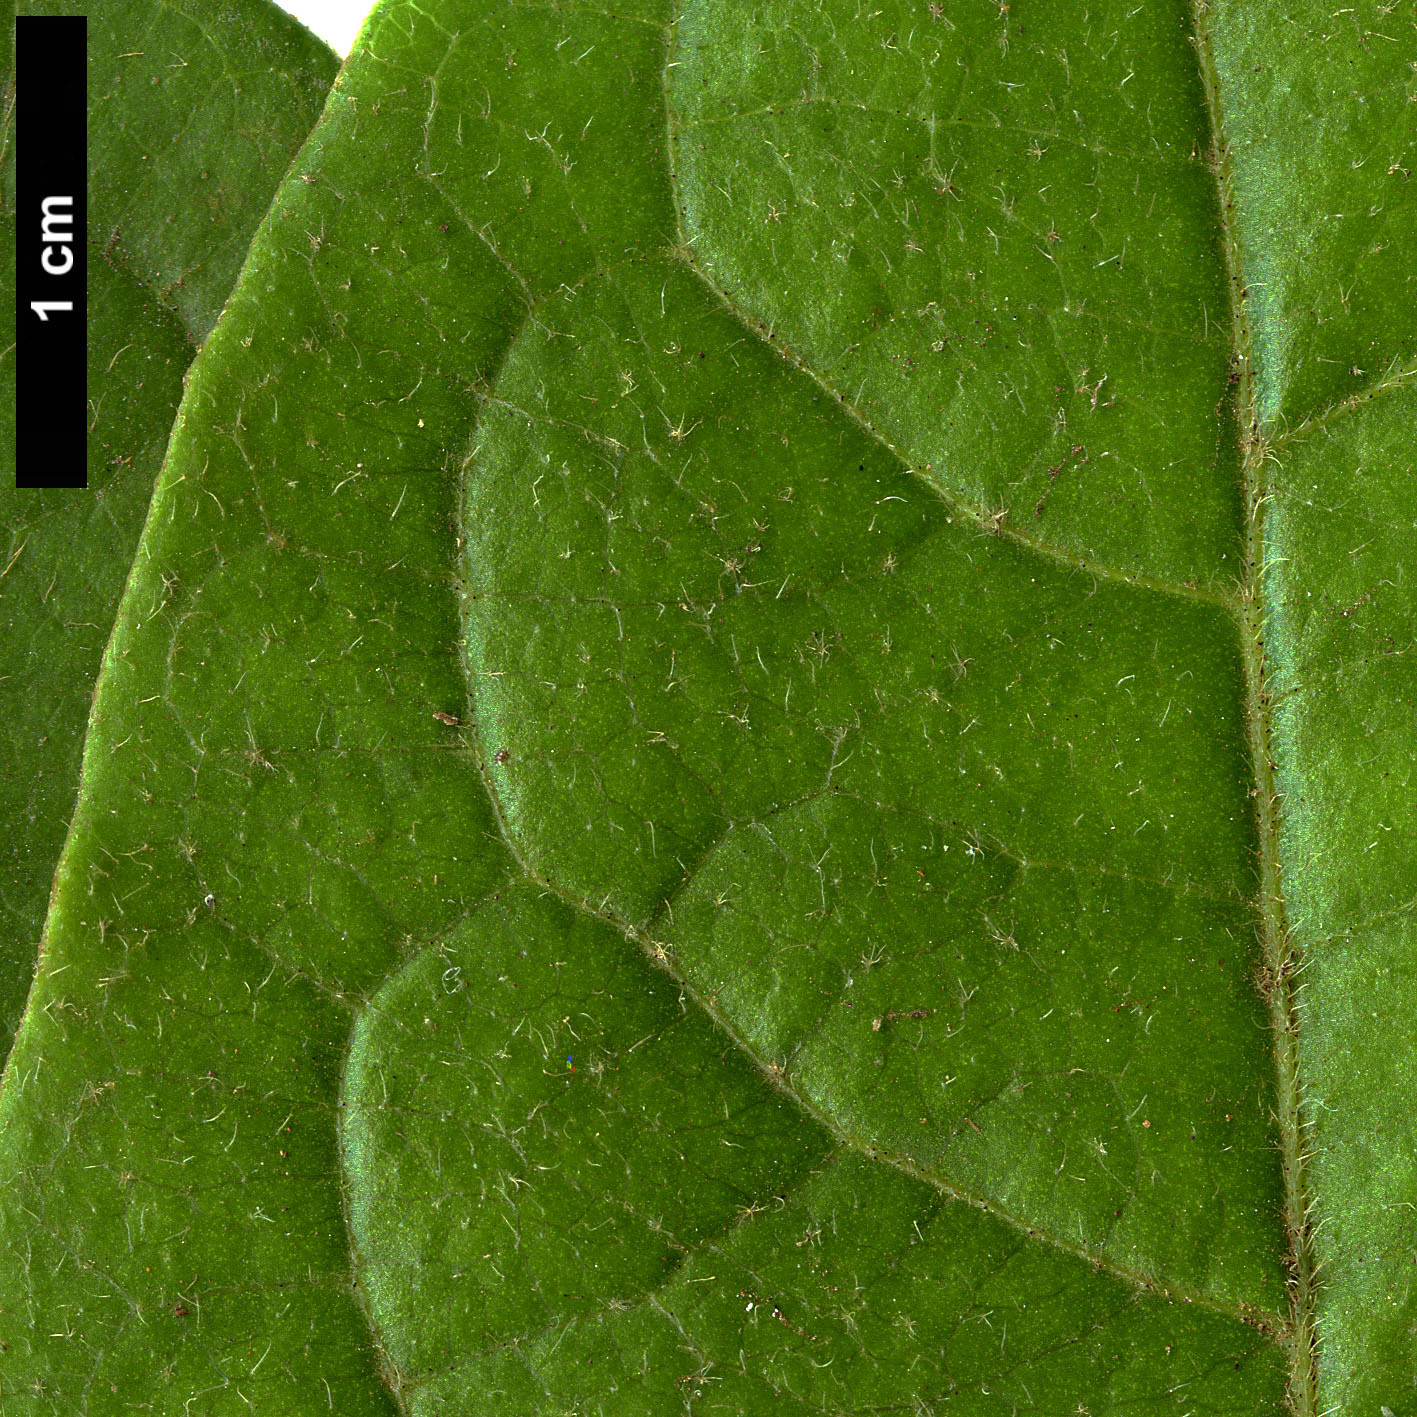 High resolution image: Family: Adoxaceae - Genus: Viburnum - Taxon: rugosum